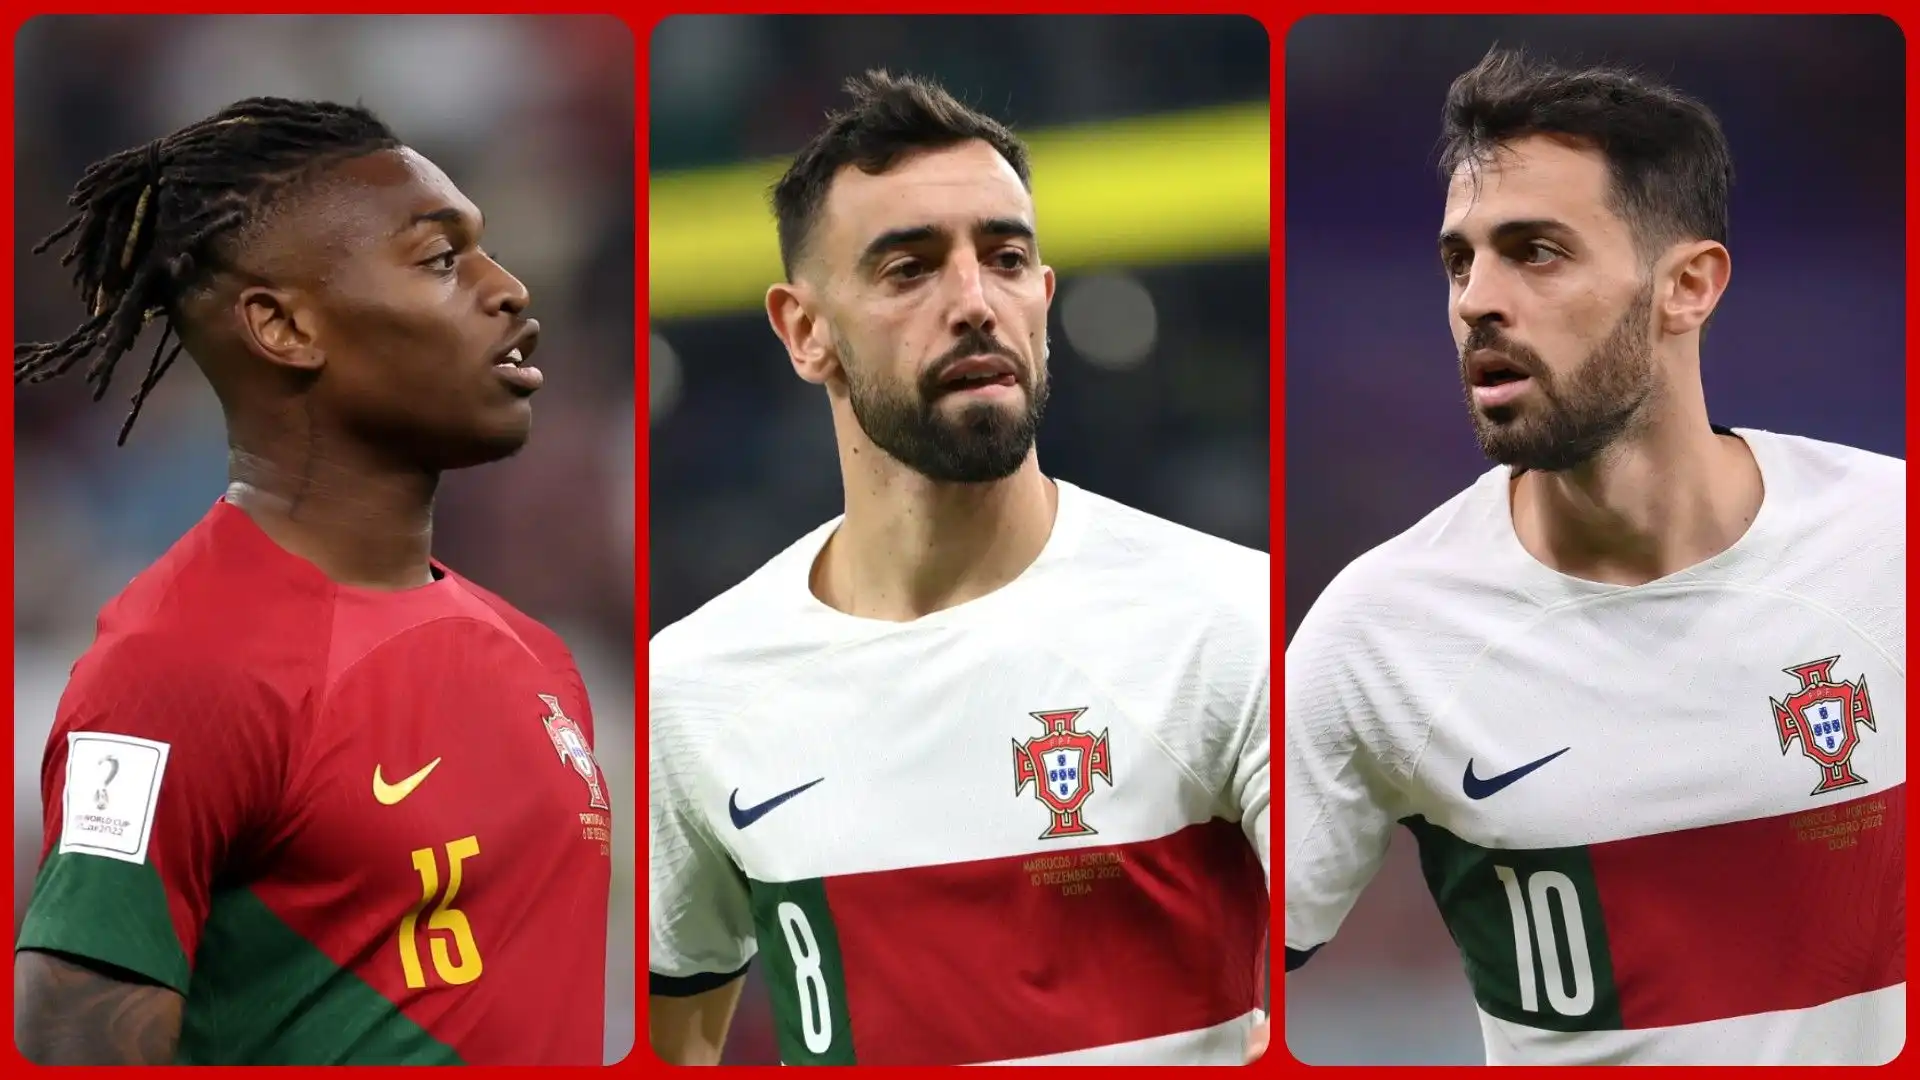 I 10 calciatori portoghesi più preziosi. La classifica in foto. Fonte: Transfermarkt